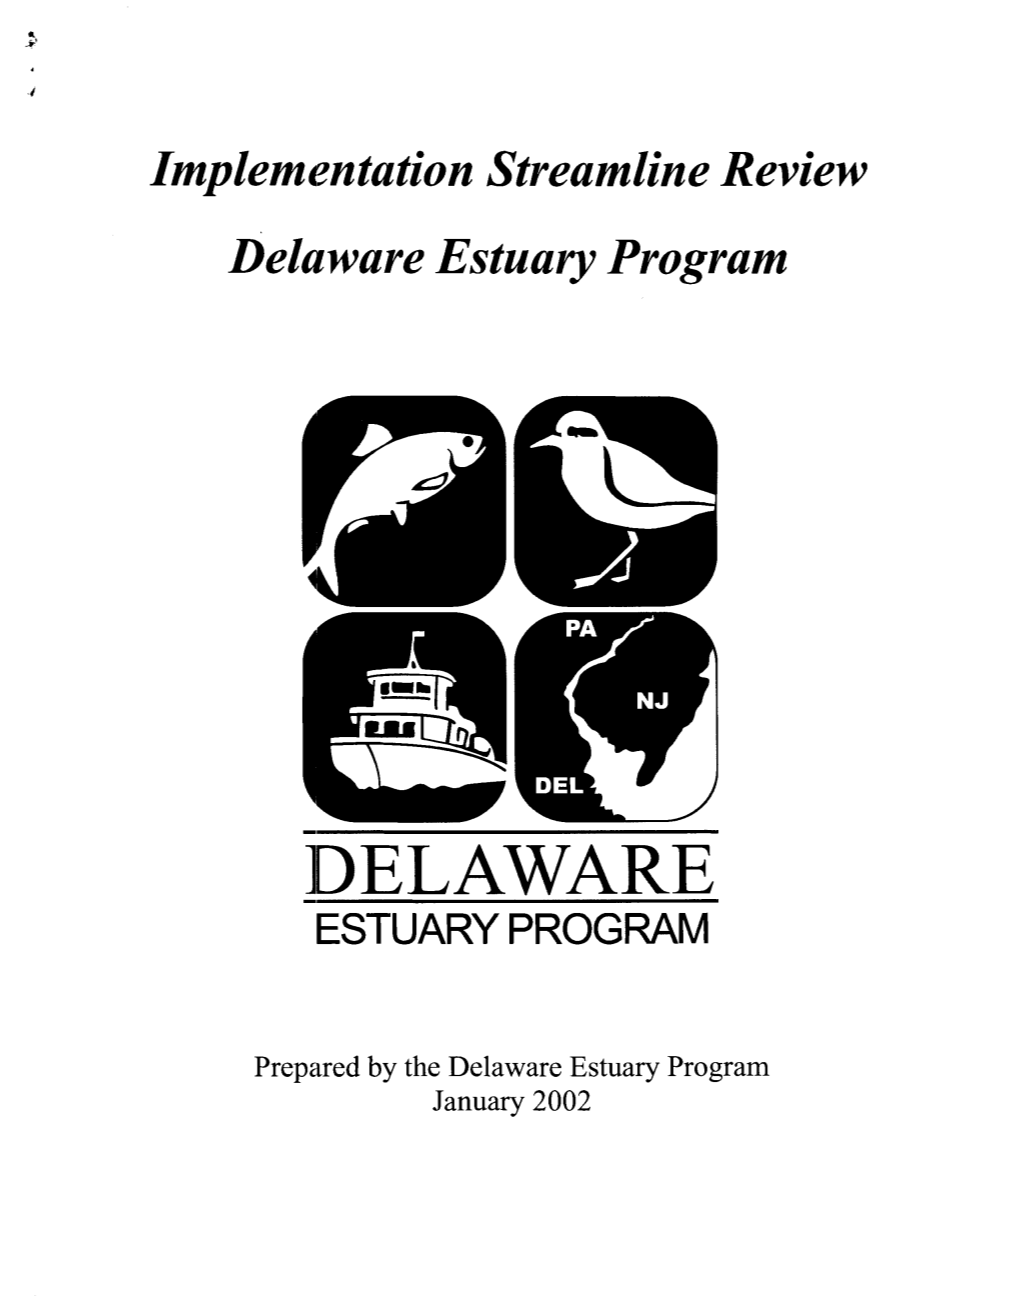 Delaware Estuary Program